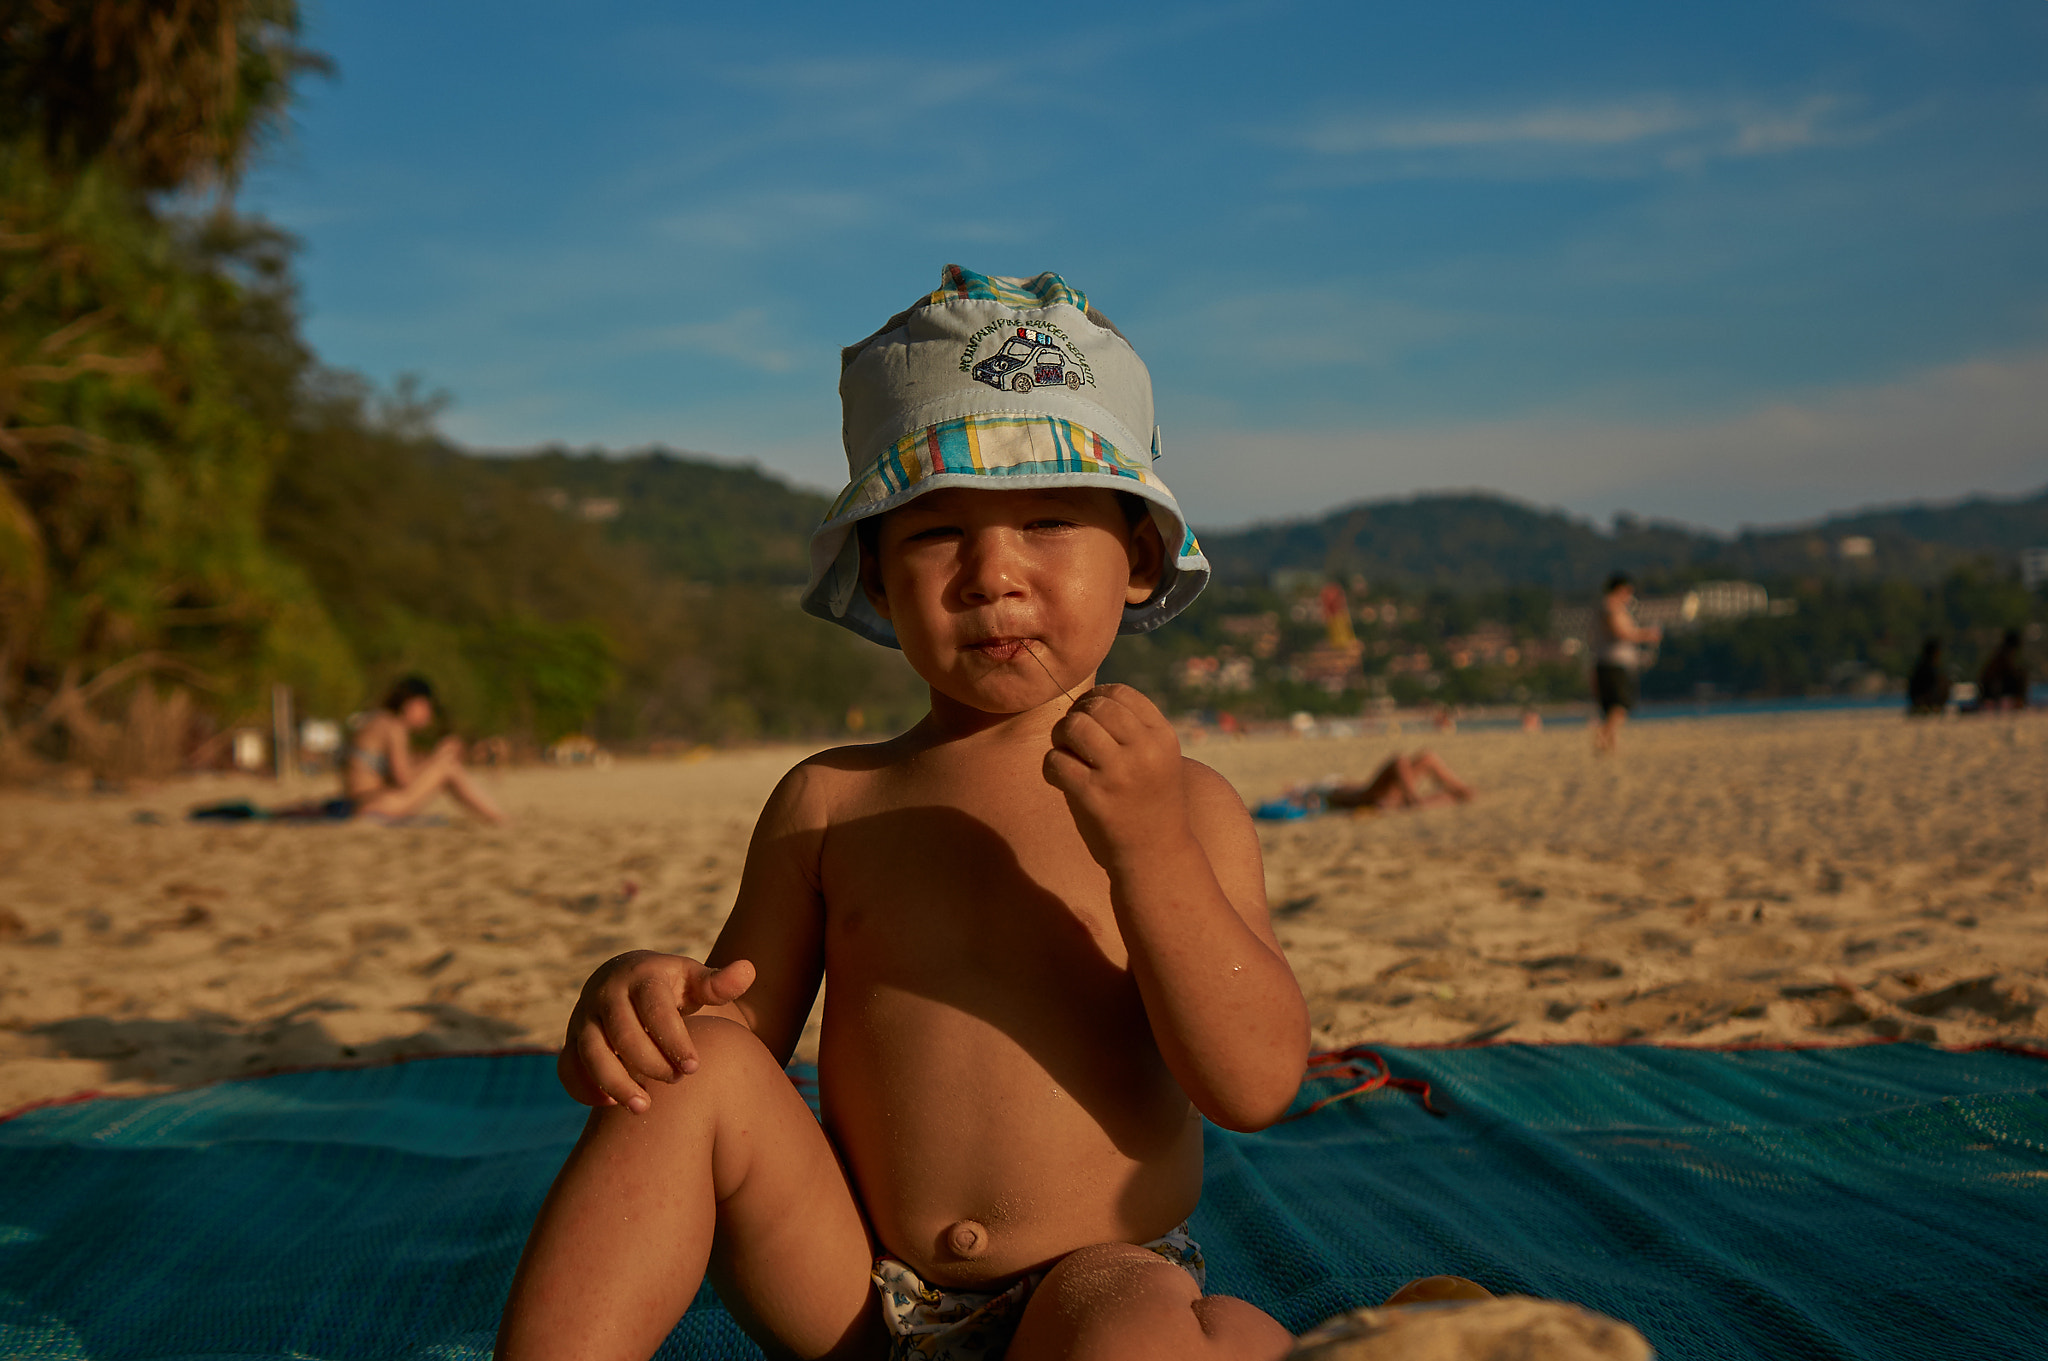 Sony Alpha NEX-5R + 28-70mm F3.5-5.6 OSS sample photo. Little boy on the beach photography